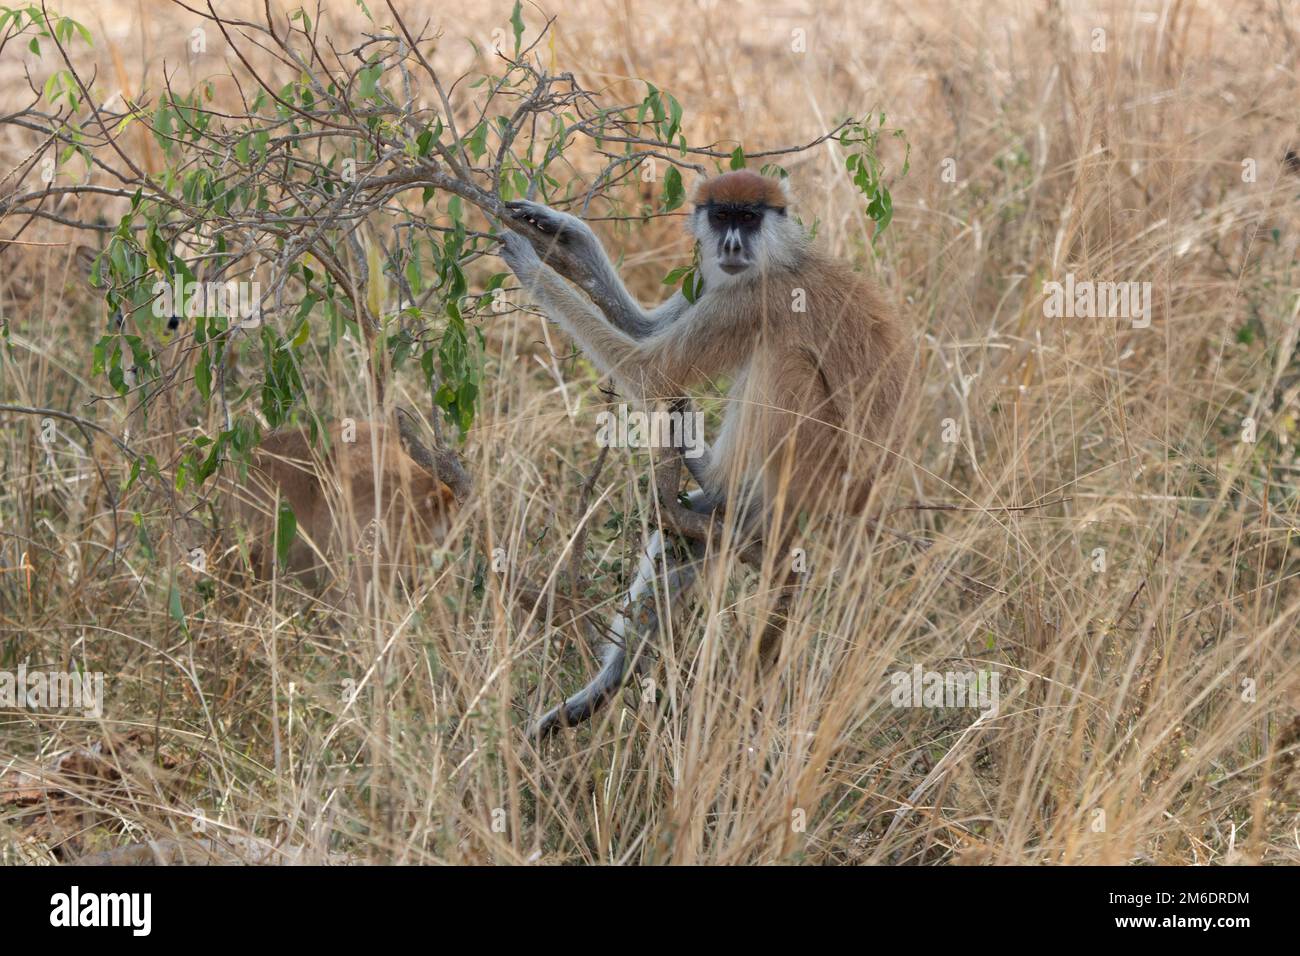 Patas-Affe oder Hussar-Affe, der auf einem Busch in der Savanne sitzt Stockfoto